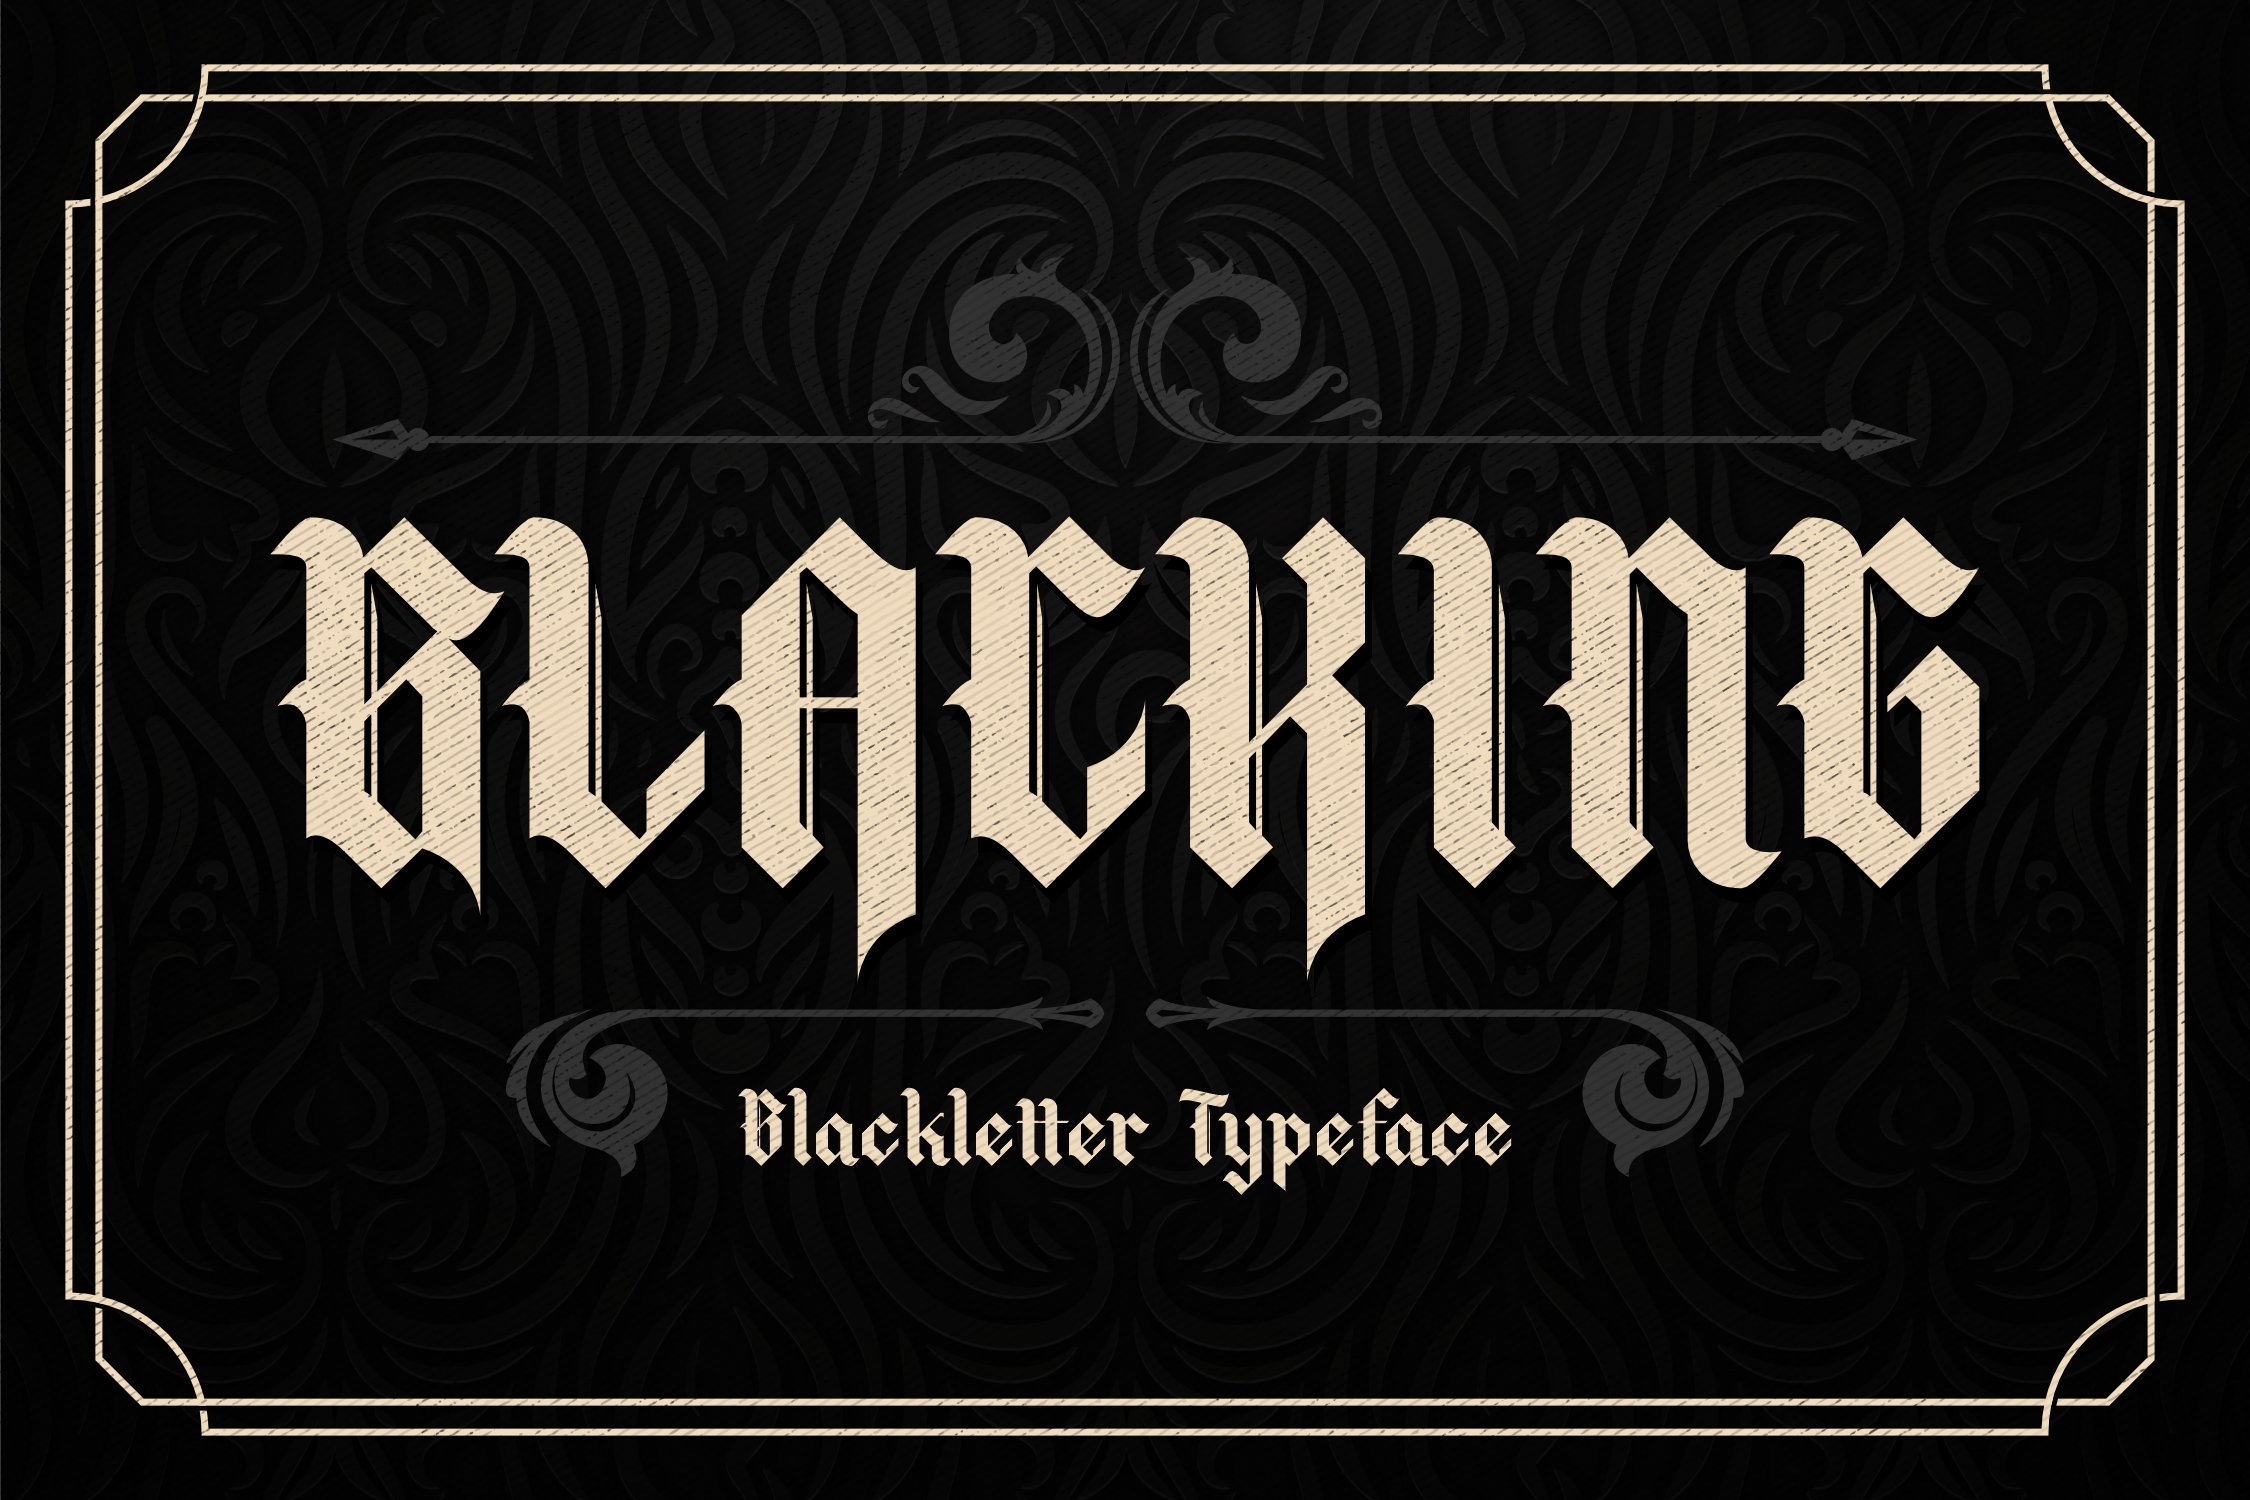 Blacking Blackletter Typeface Font cover image.